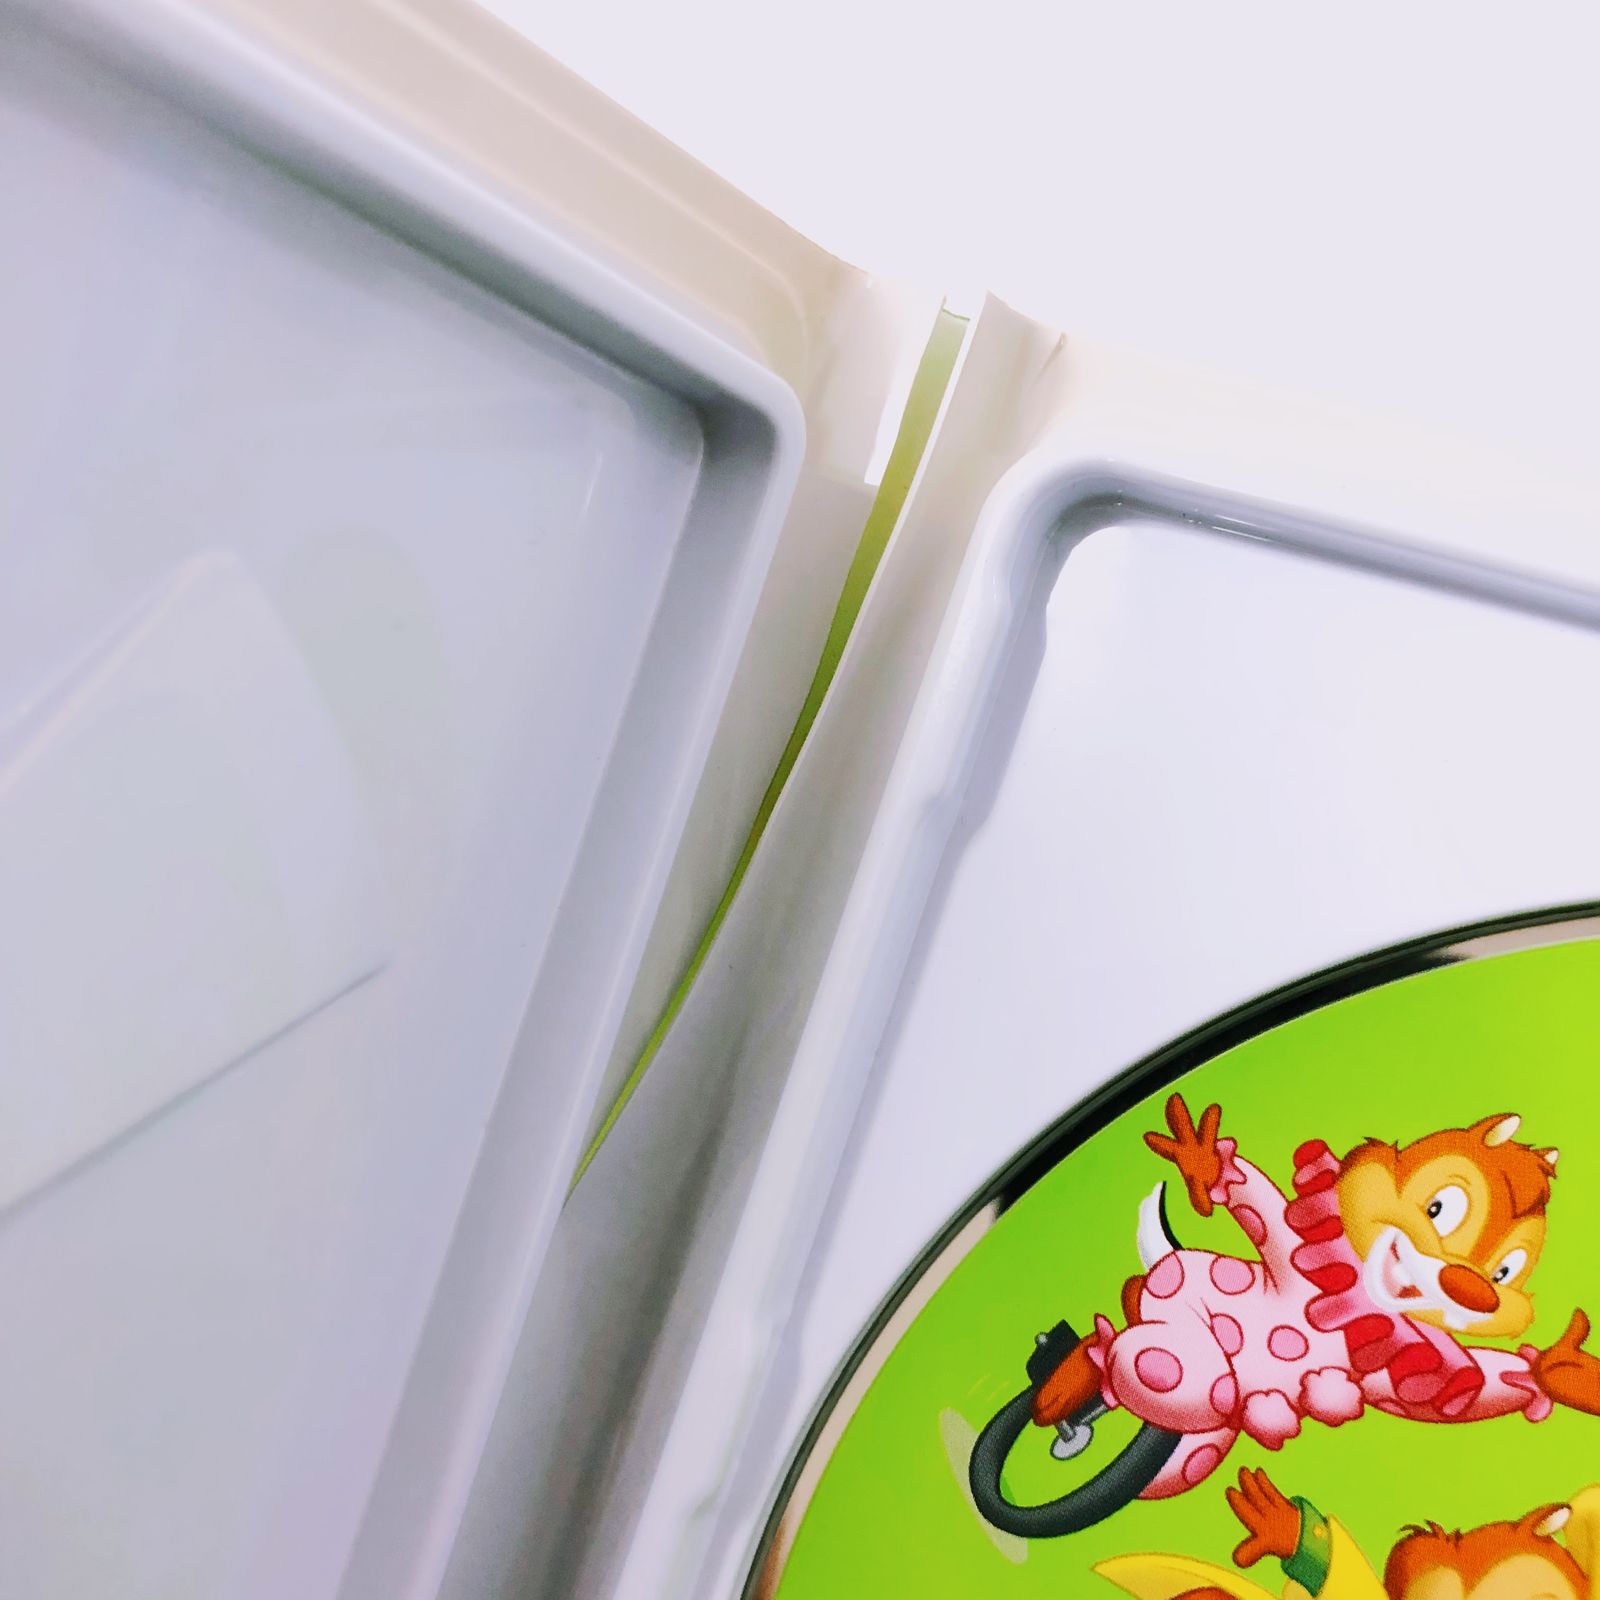 ディズニー英語システム ストレートプレイ DVD 旧子役 字幕有 2009年